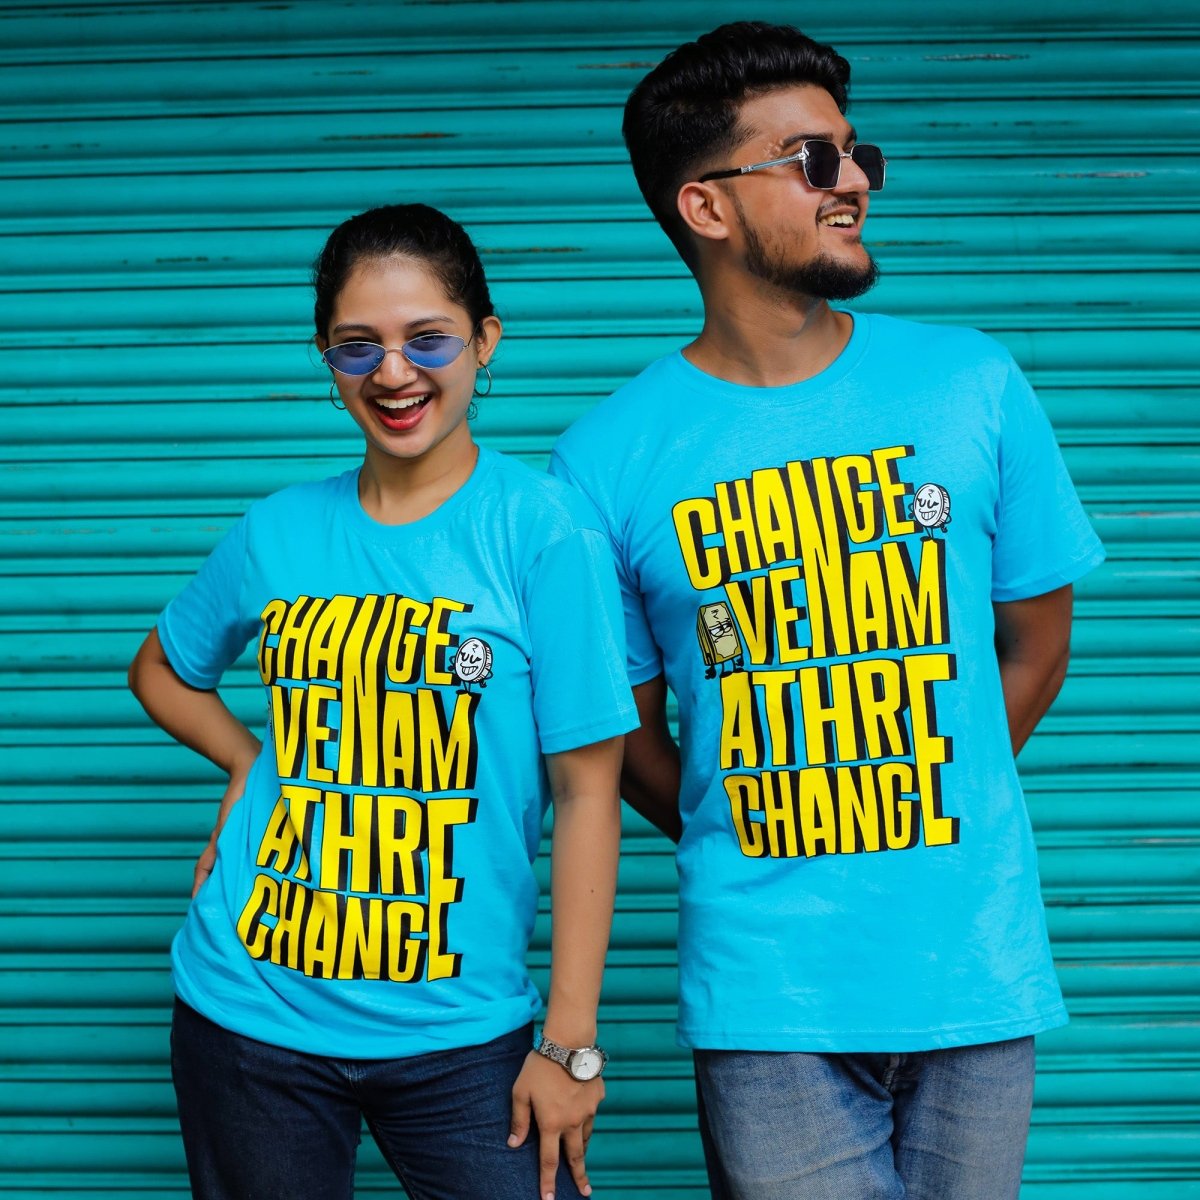 Change Venam Printed T-Shirt for Women